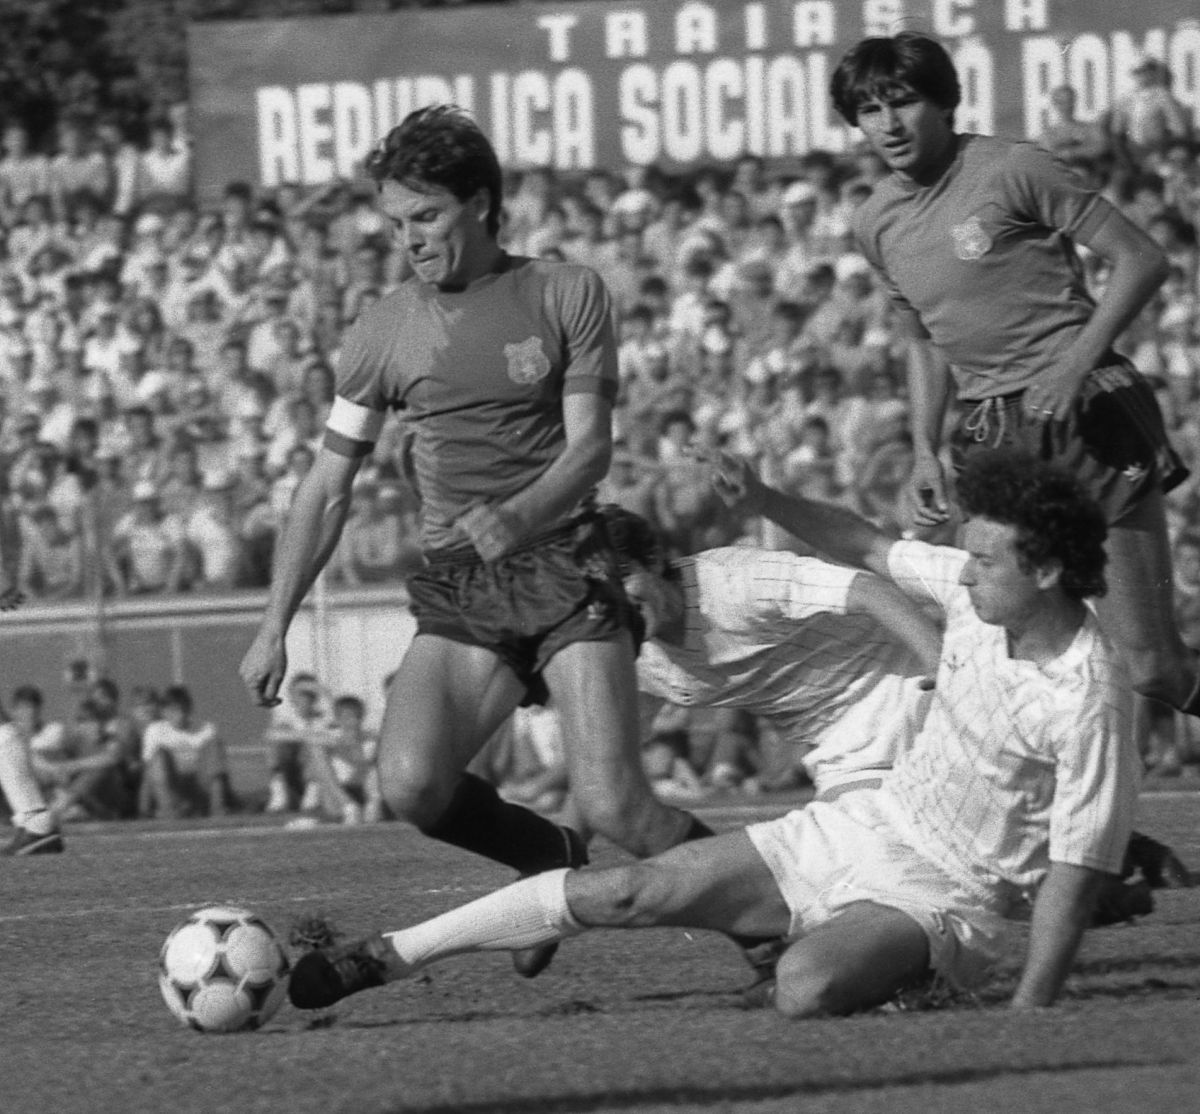 EPISODUL 10: Steaua - Dinamo 0-3 (1989) » MVP-urile unui meci de poveste au fost cei doi decari: Hagi și Mateuț + Mihăescu, „gardianul” stelistului